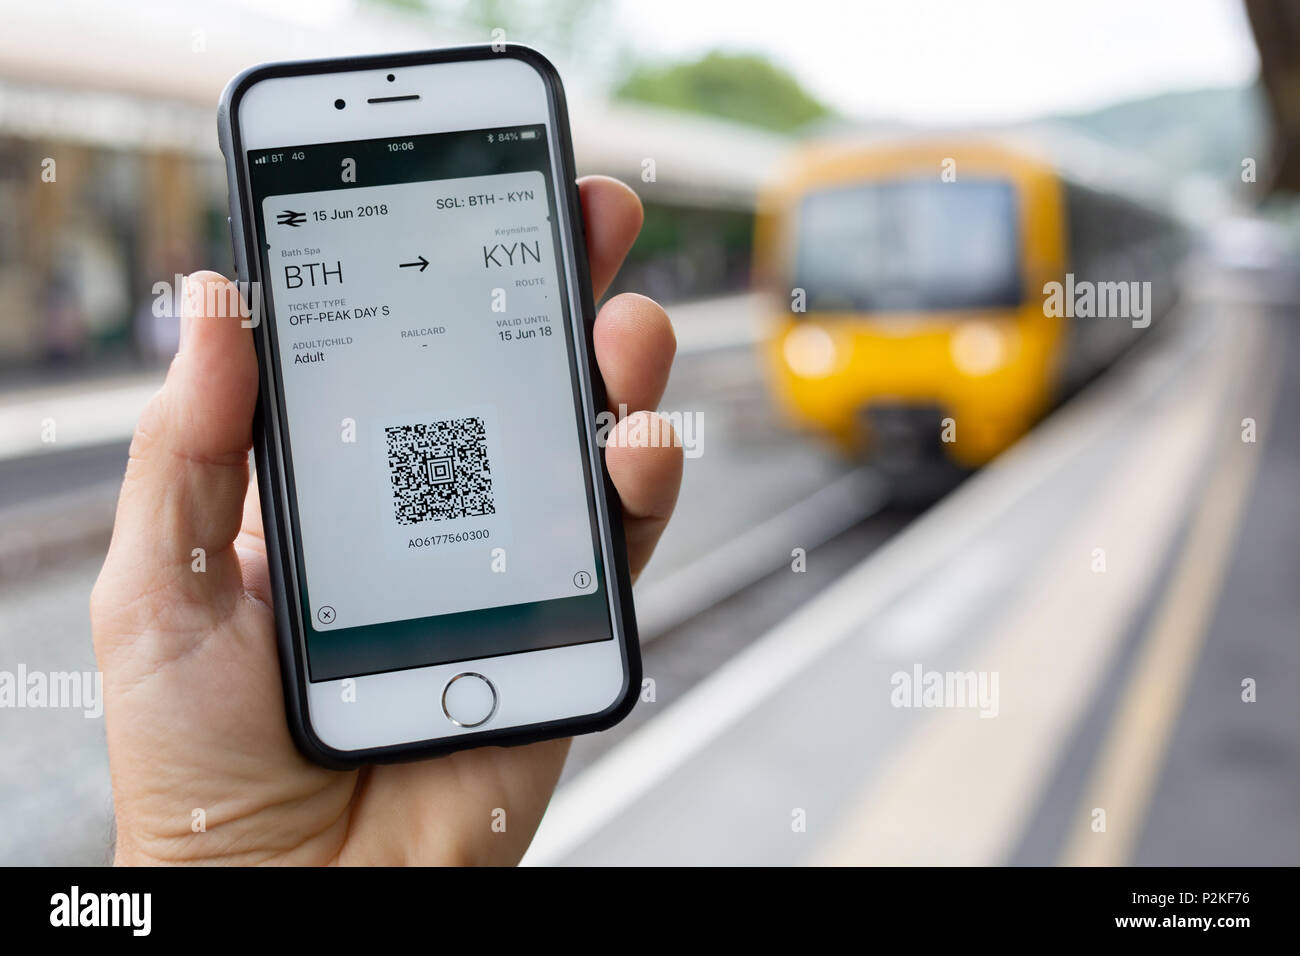 Badewanne, Großbritannien - 15 Juni, 2018: Close-up ein iPhone 6 Bildschirm mit einem elektronischen Fahrkarte, mit einem Zug am Bahnsteig hinter Stockfoto